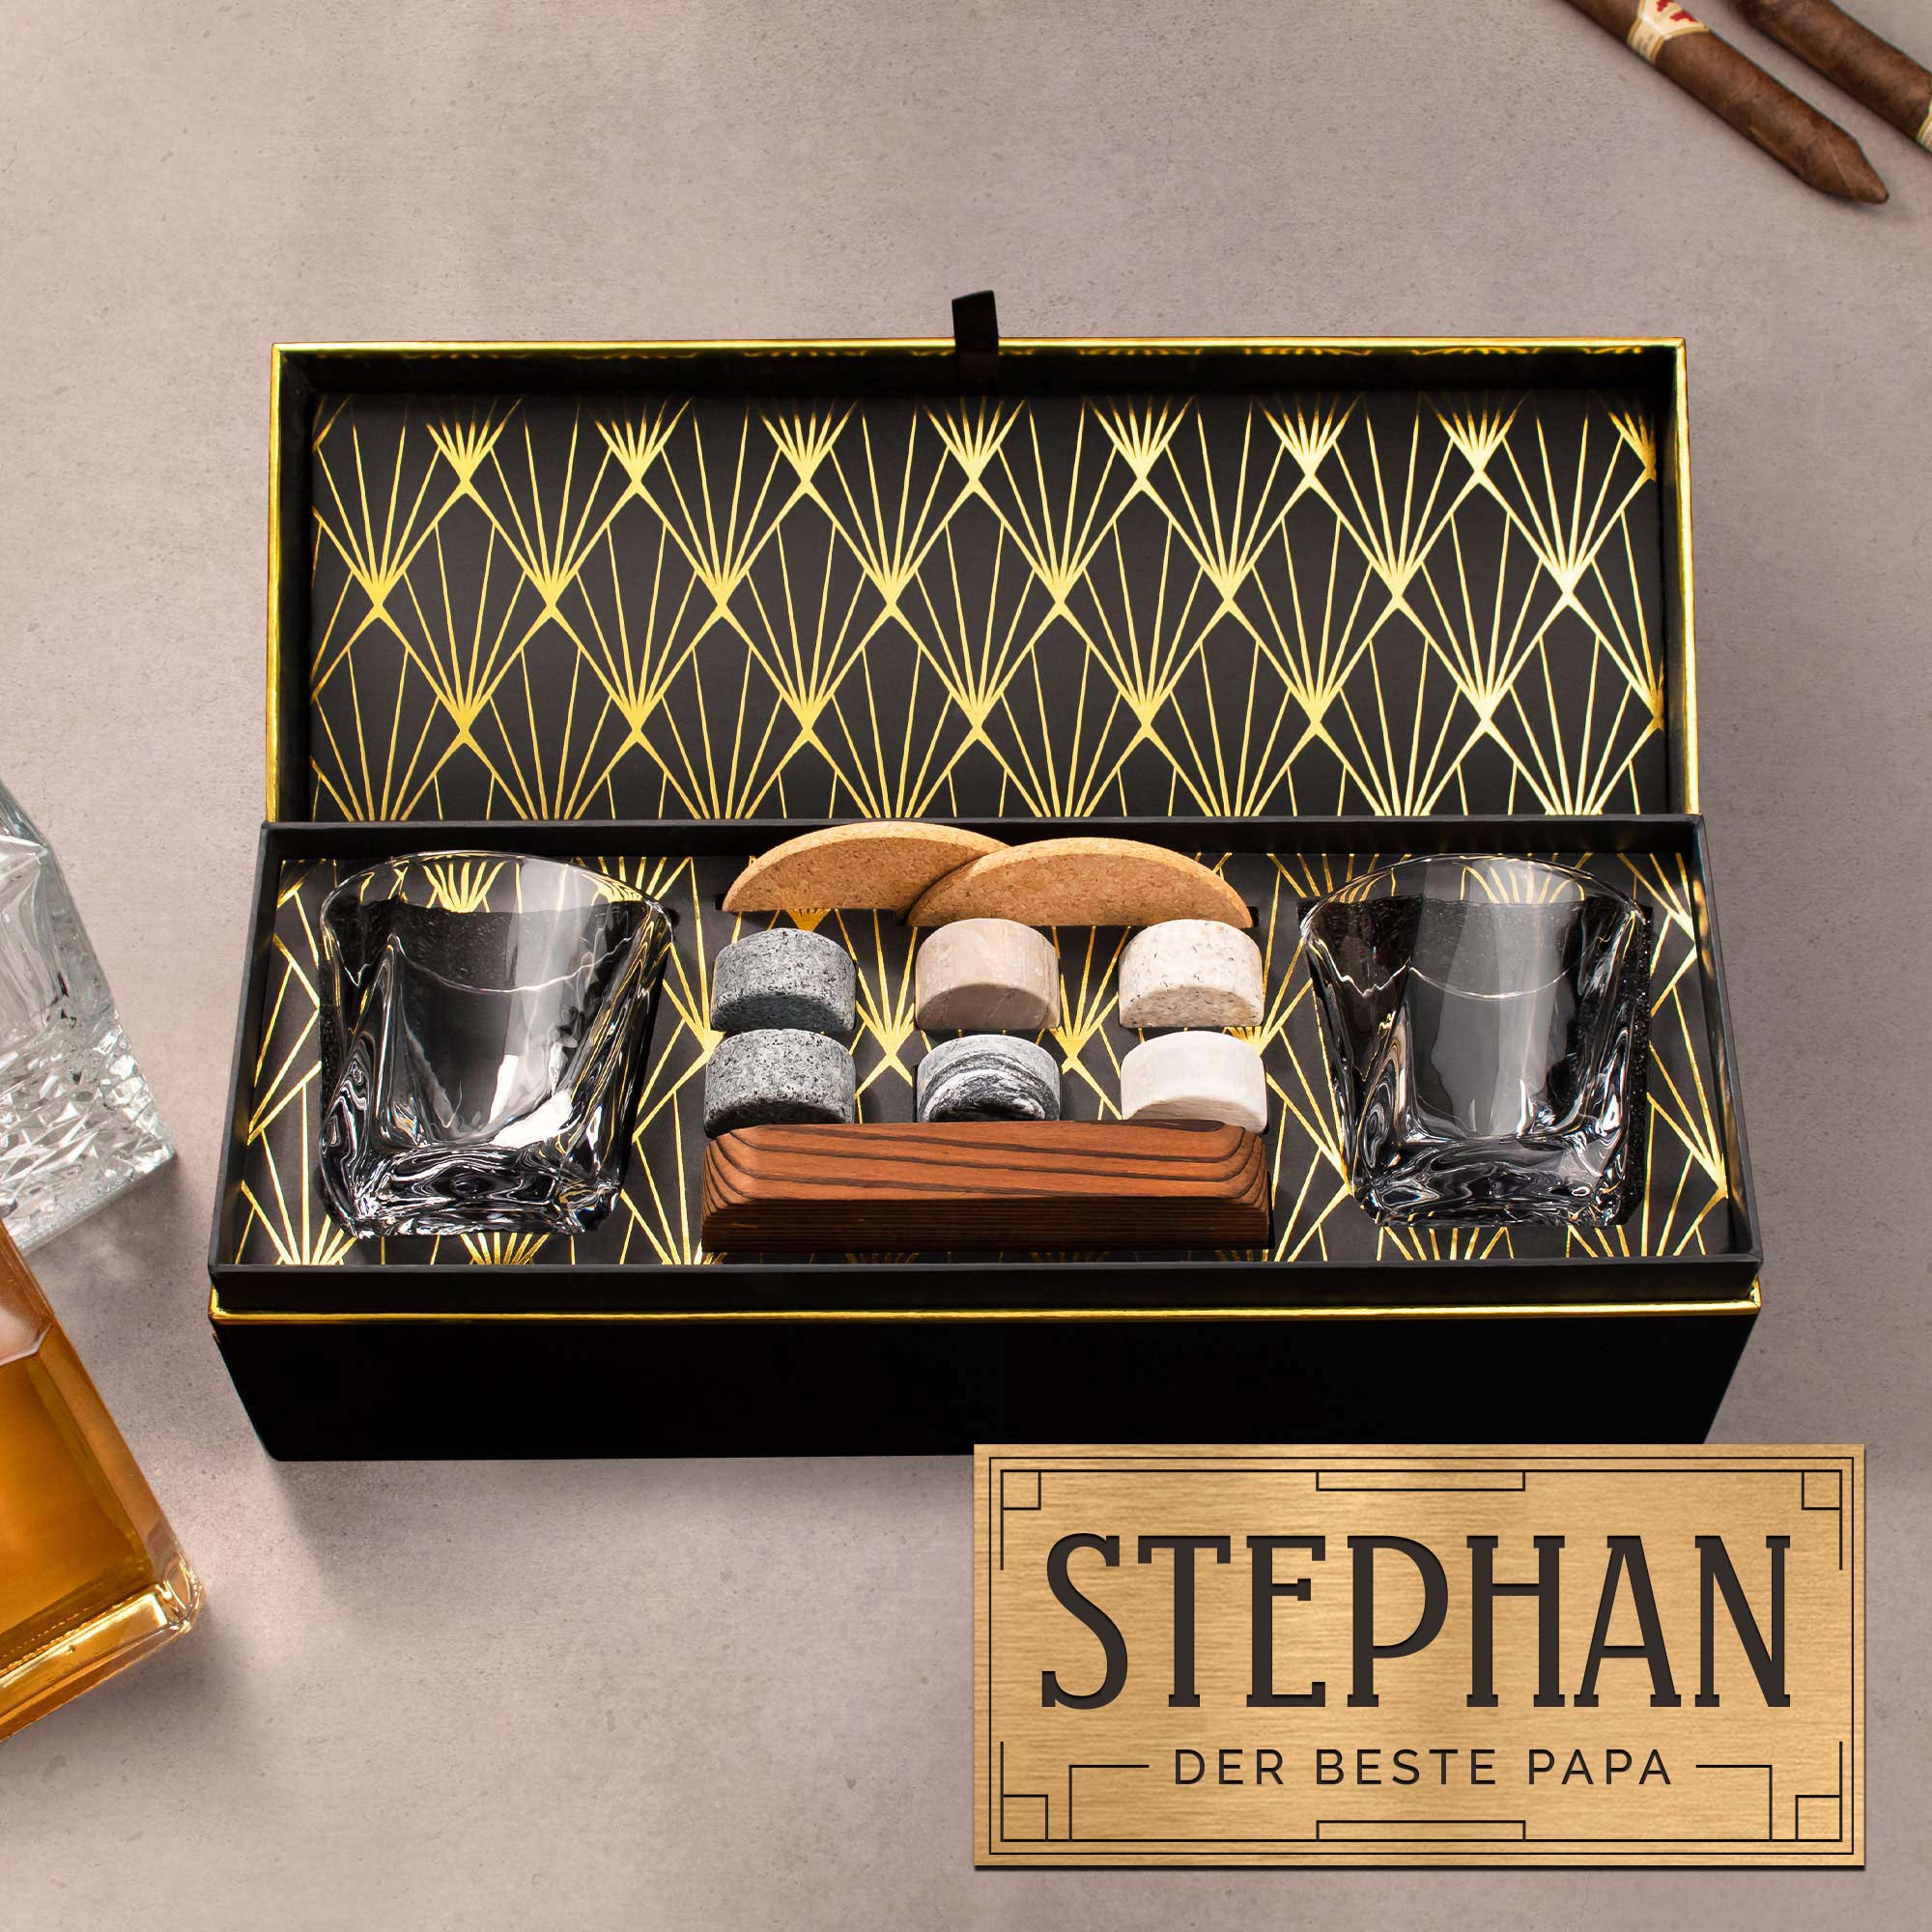 Whisky Set in personalisierter Geschenkbox - Bester Papa 0021-0002-DE-0001